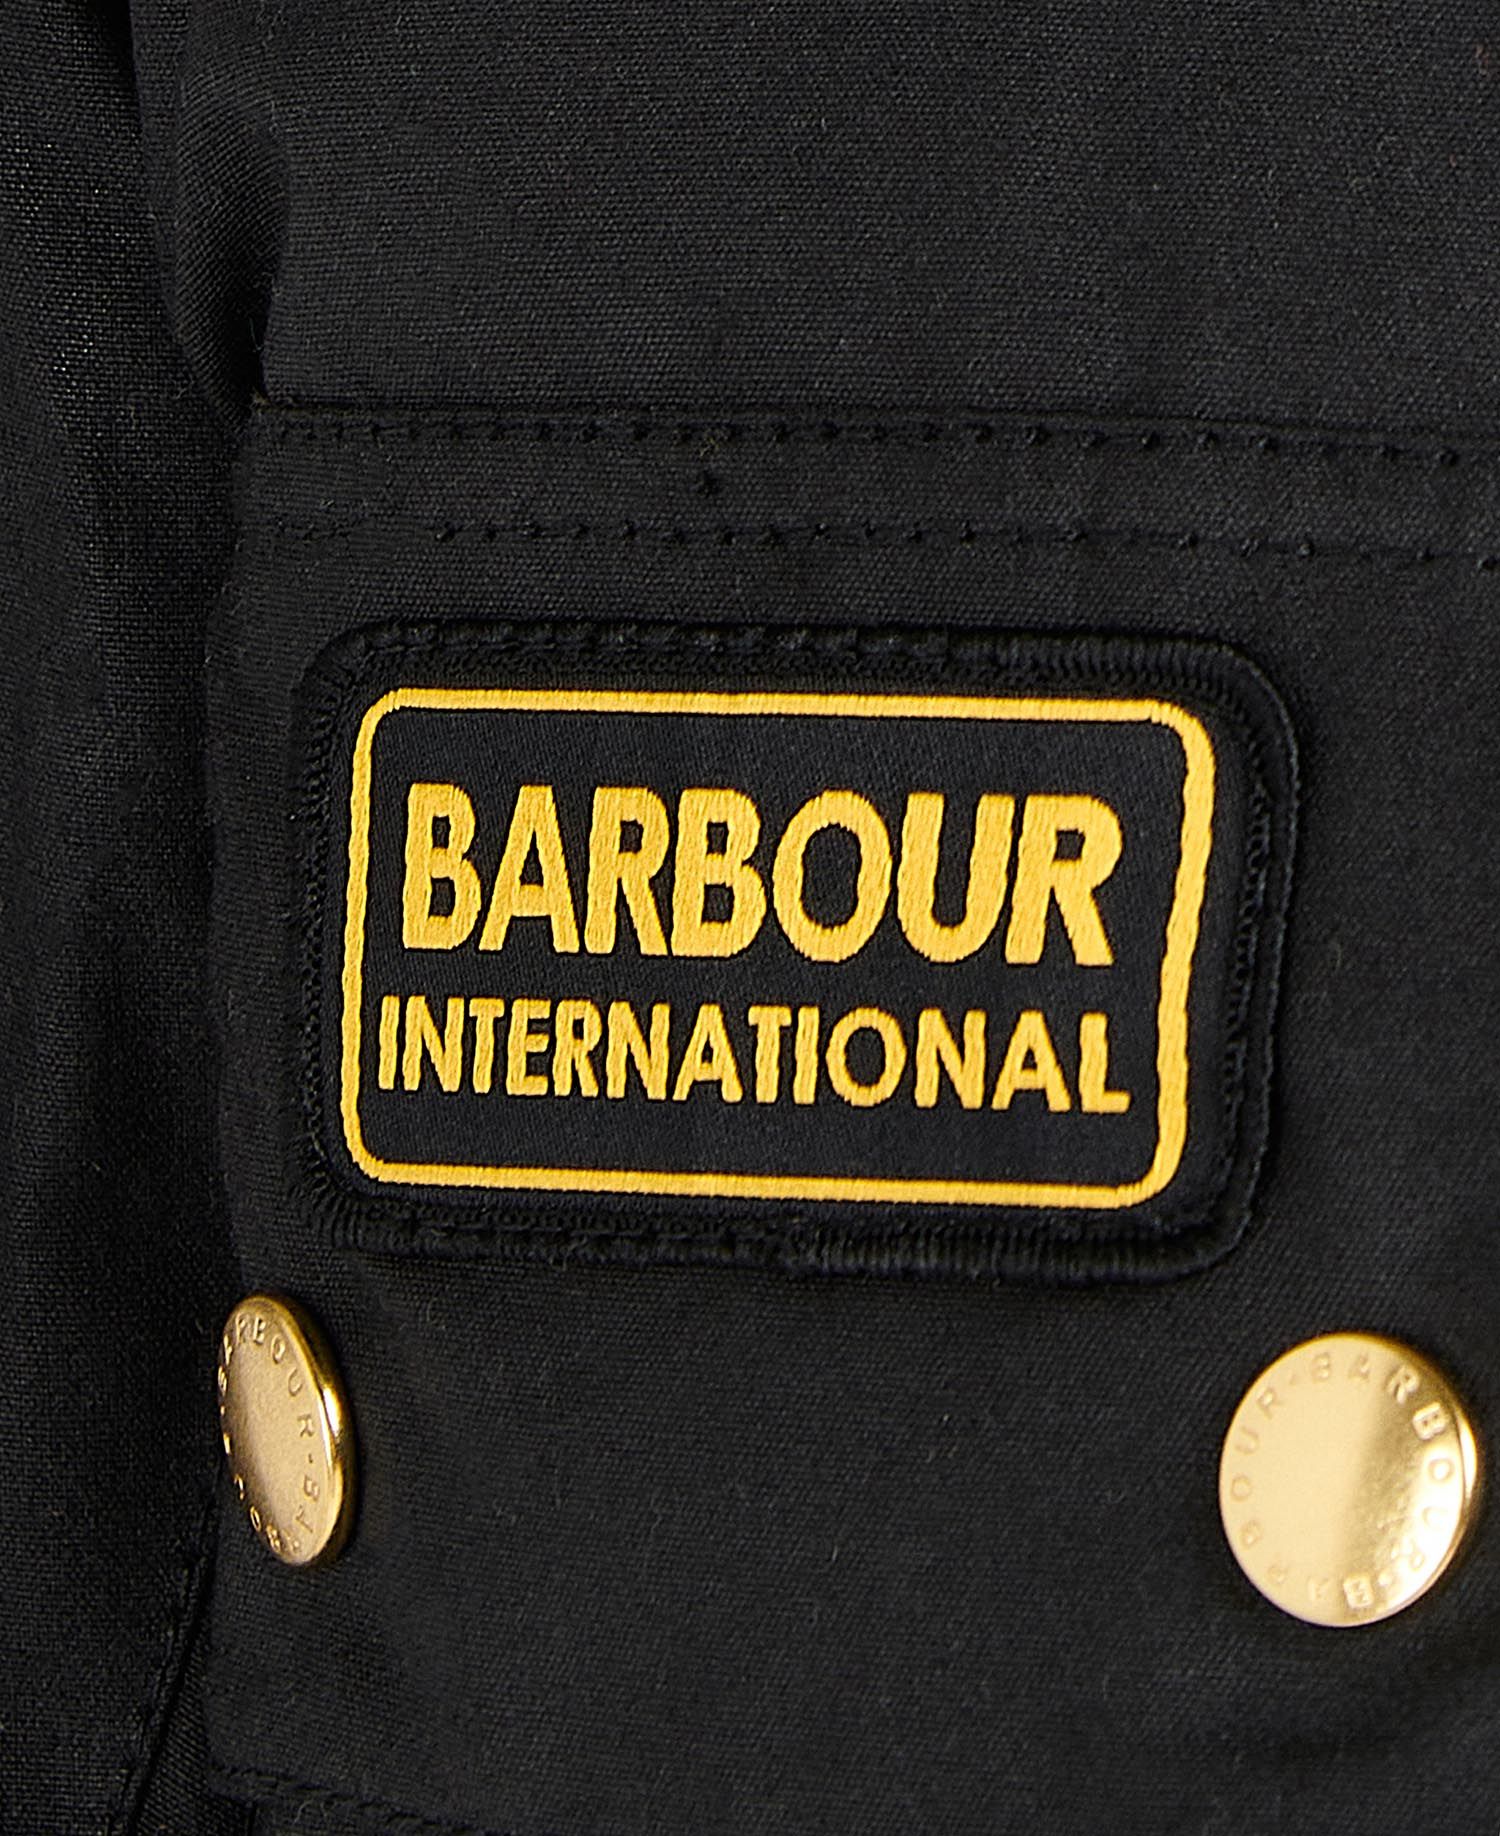 Parka Hombre International Kevlar, Barbour